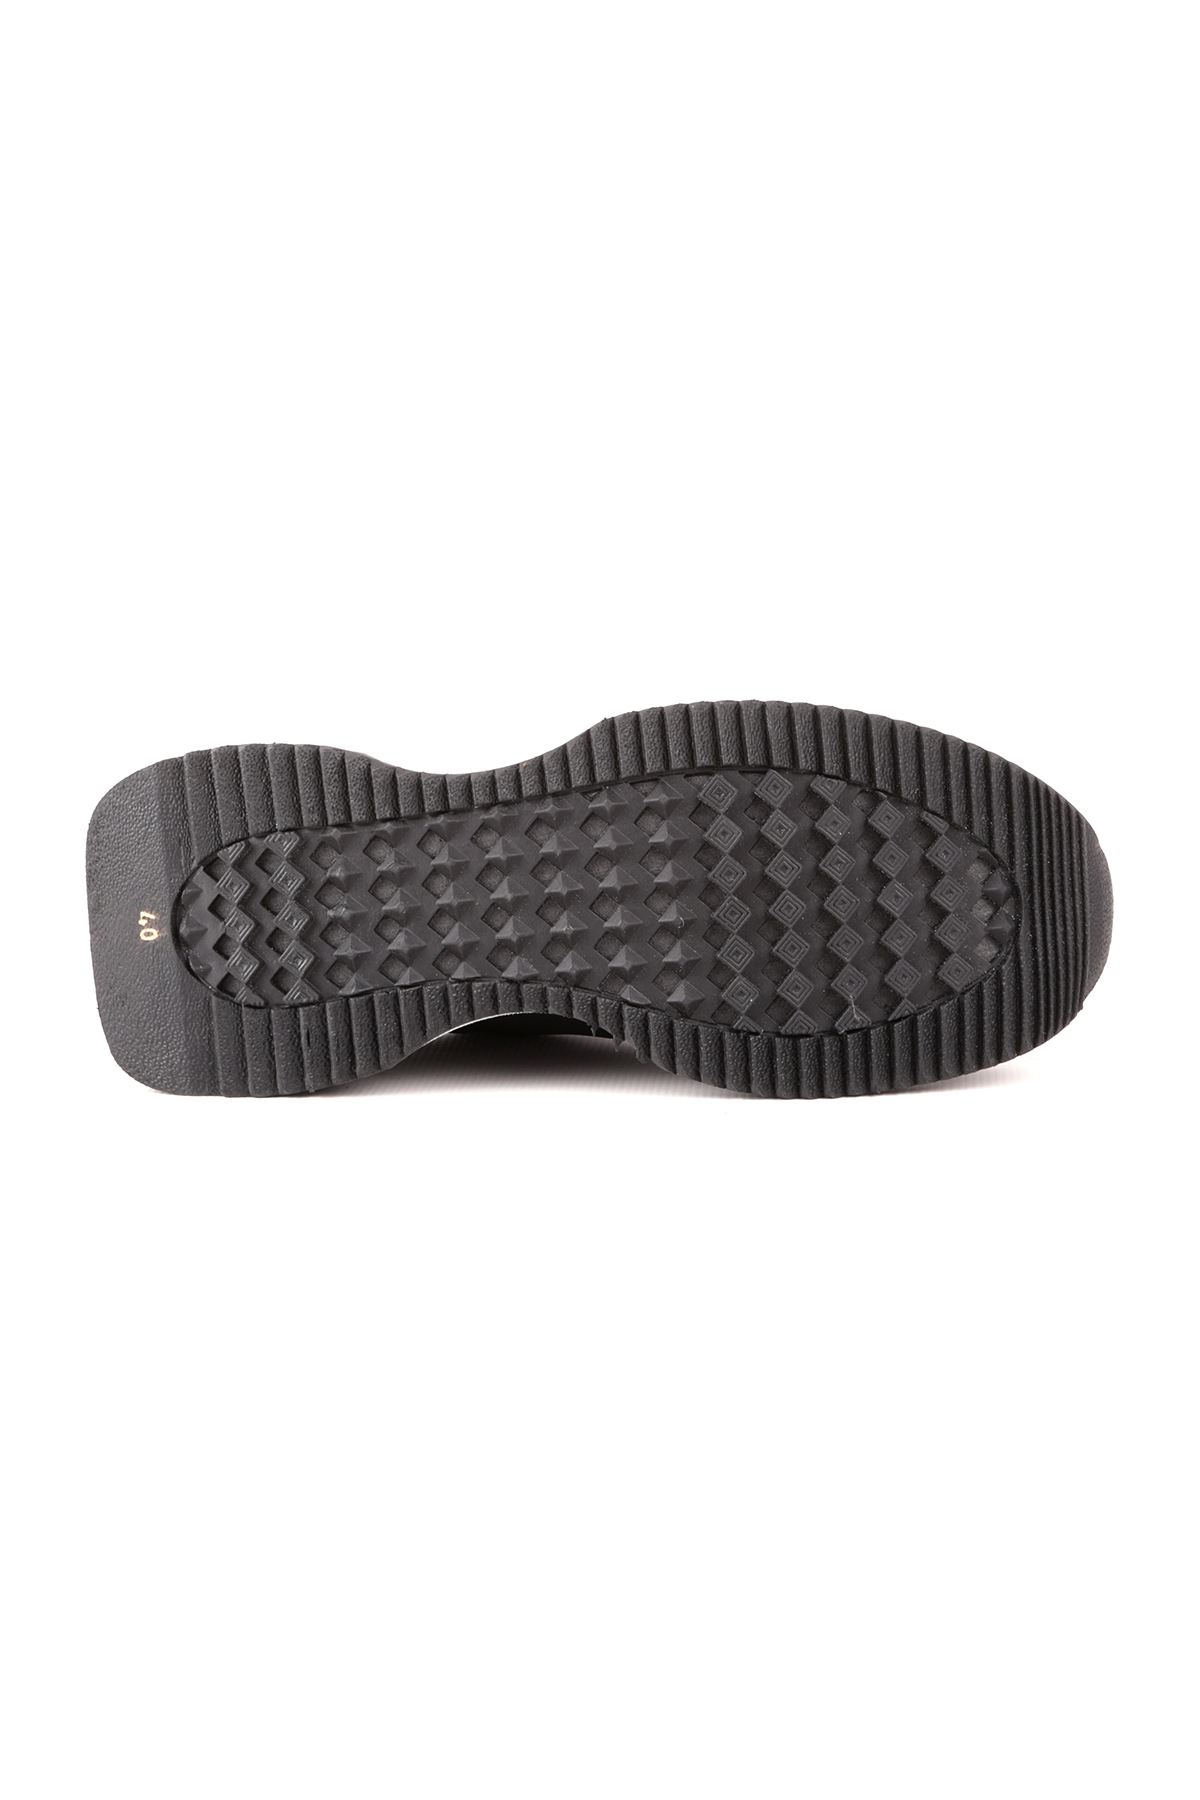 Libero L4772 Siyah Casual Erkek Ayakkabı